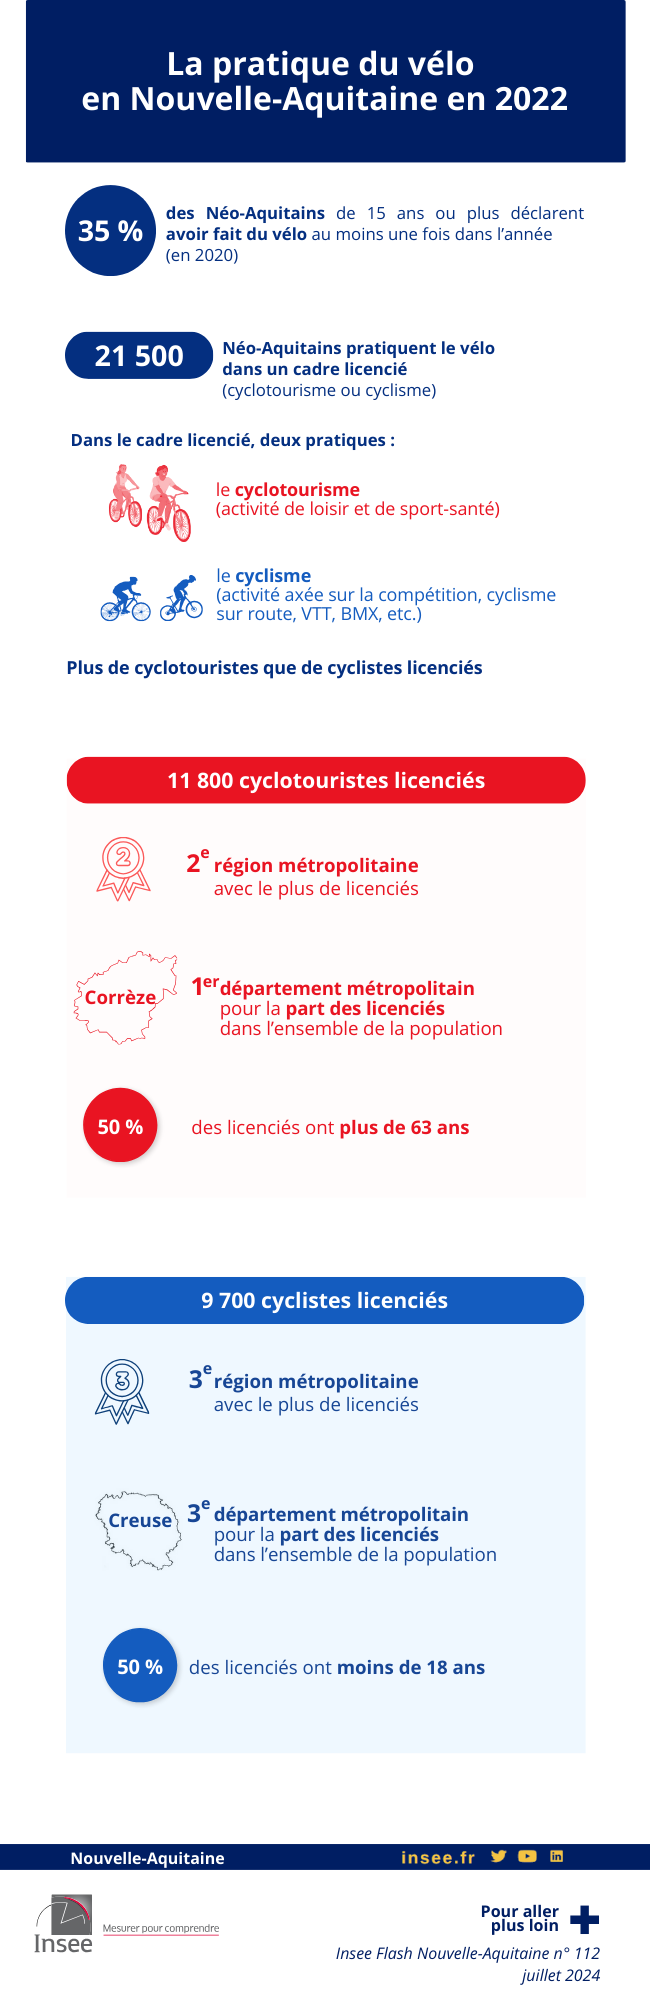 La pratique du vélo en Nouvelle-Aquitaine en 2022